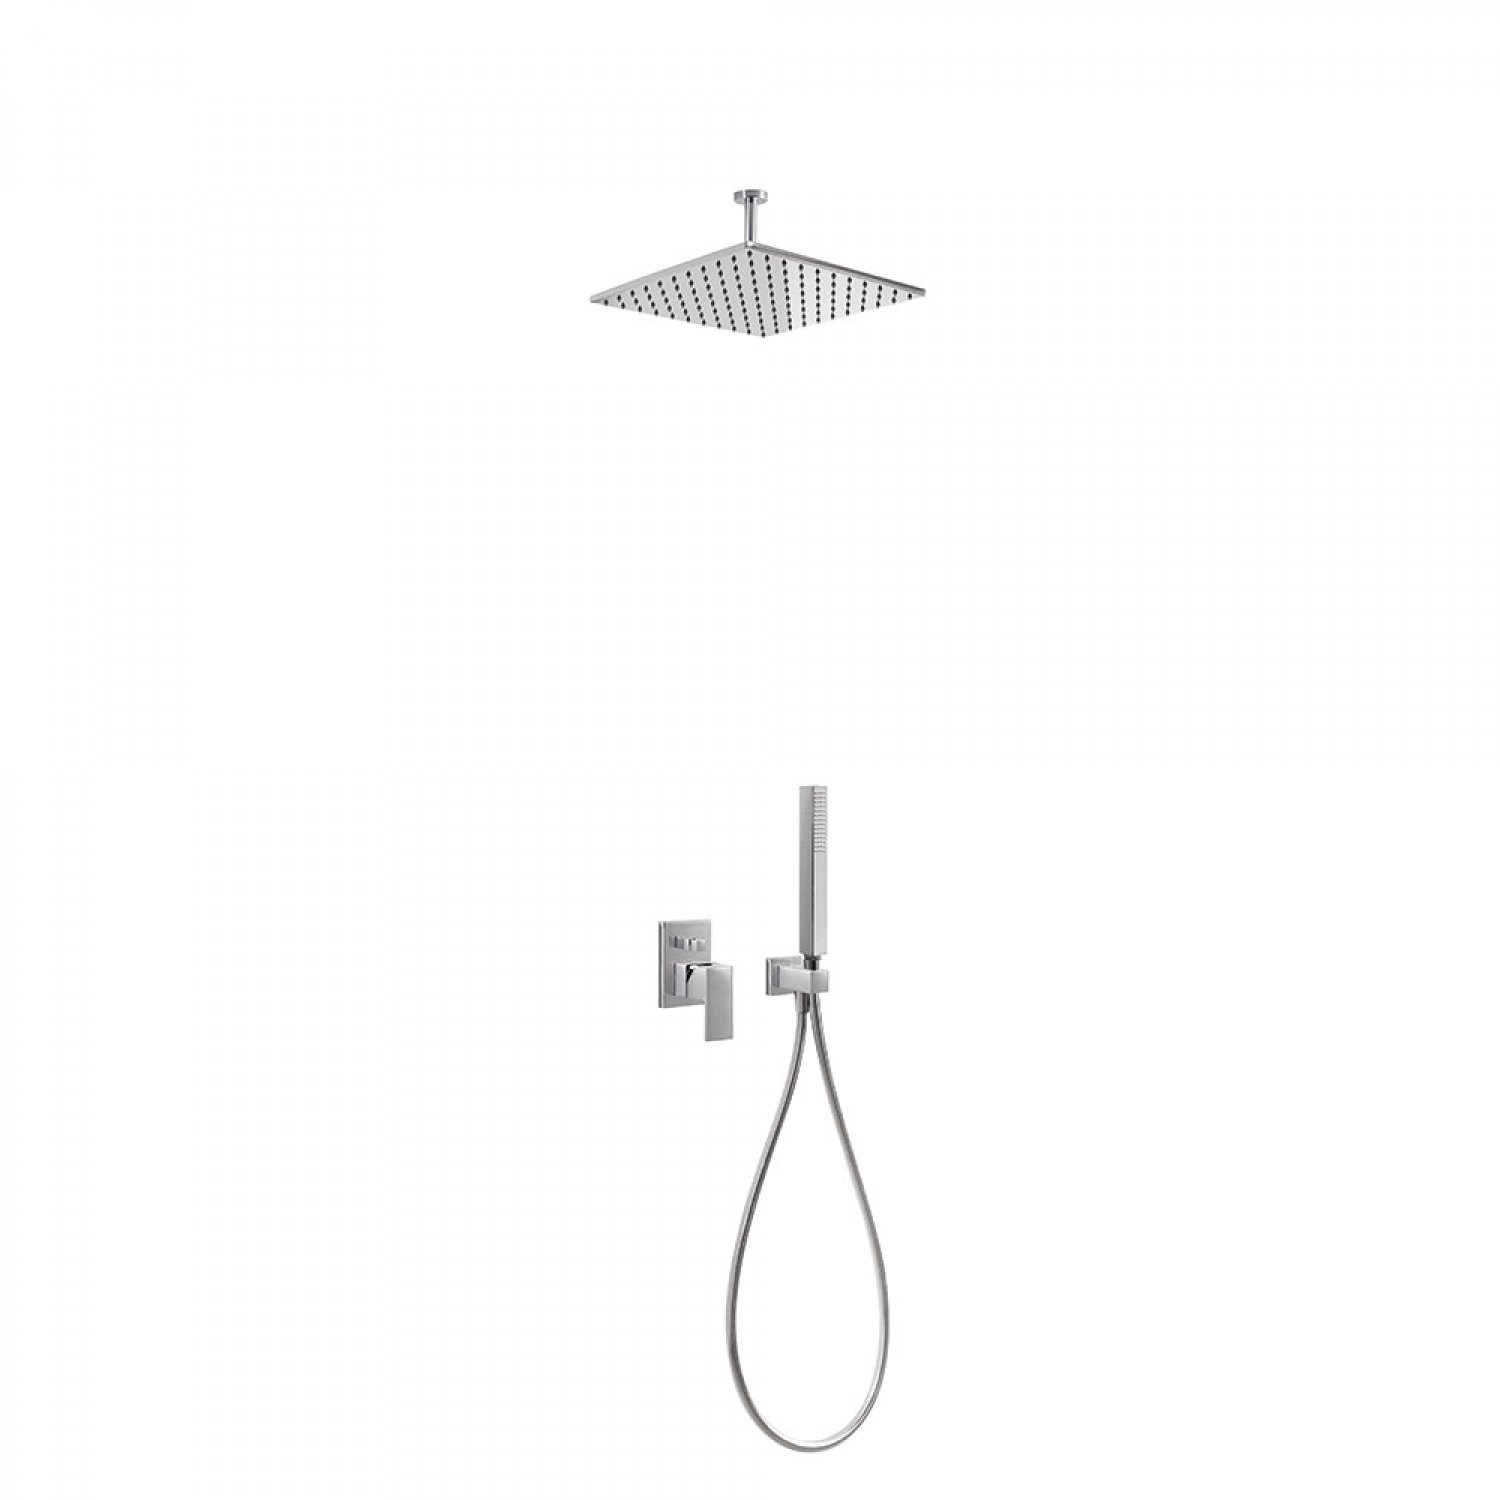 http://desidea.hu/wp-content/uploads/2019/07/Concealed-shower-set-00618080.jpg